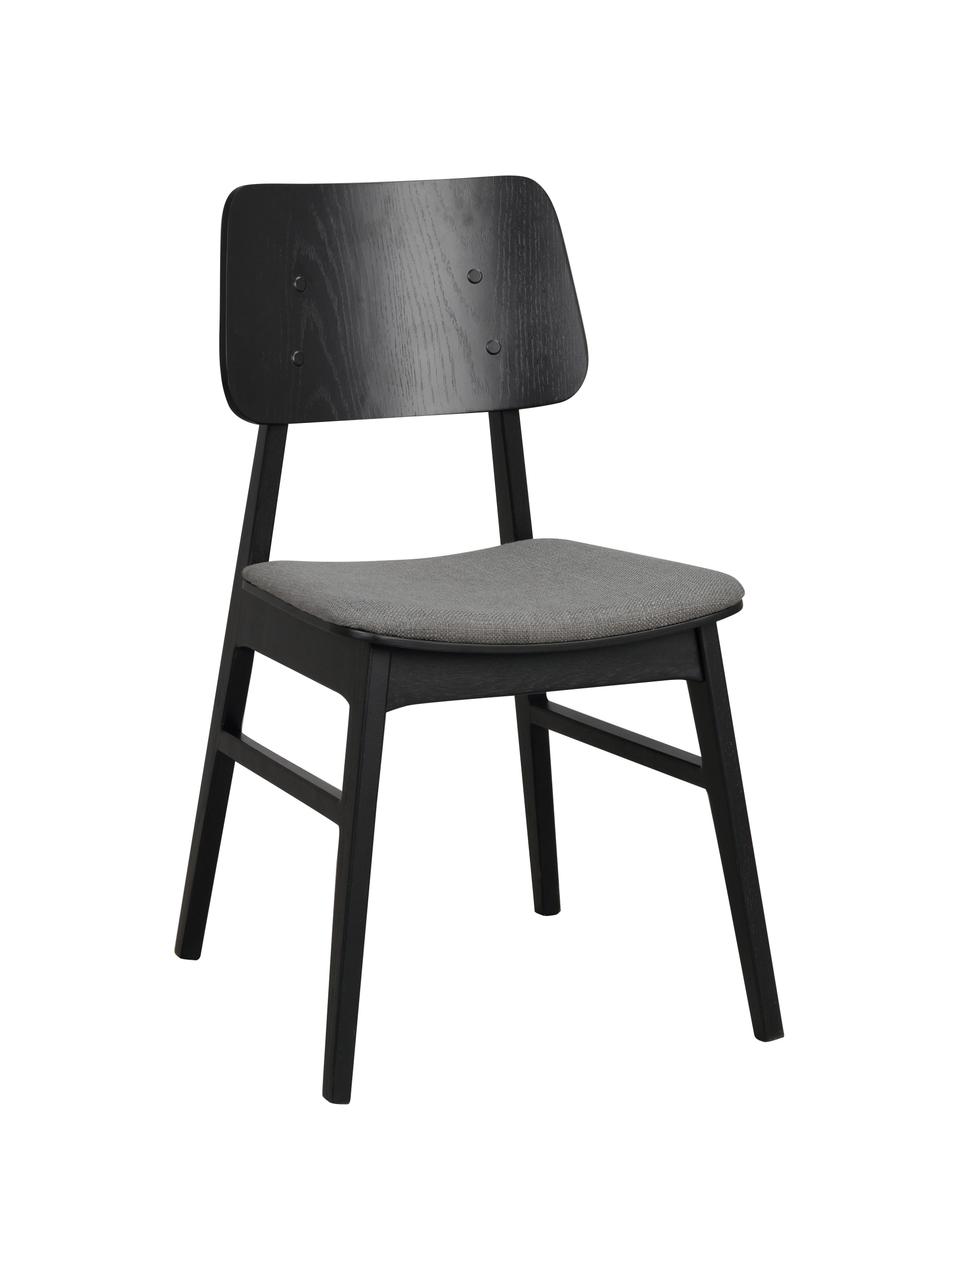 Holzstühle Nagano mit gepolsterter Sitzfläche, 2 Stück, Bezug: 100 % Polyester Der hochw, Webstoff Dunkelgrau, Eichenholz schwarz lackiert, B 50 x T 51 cm